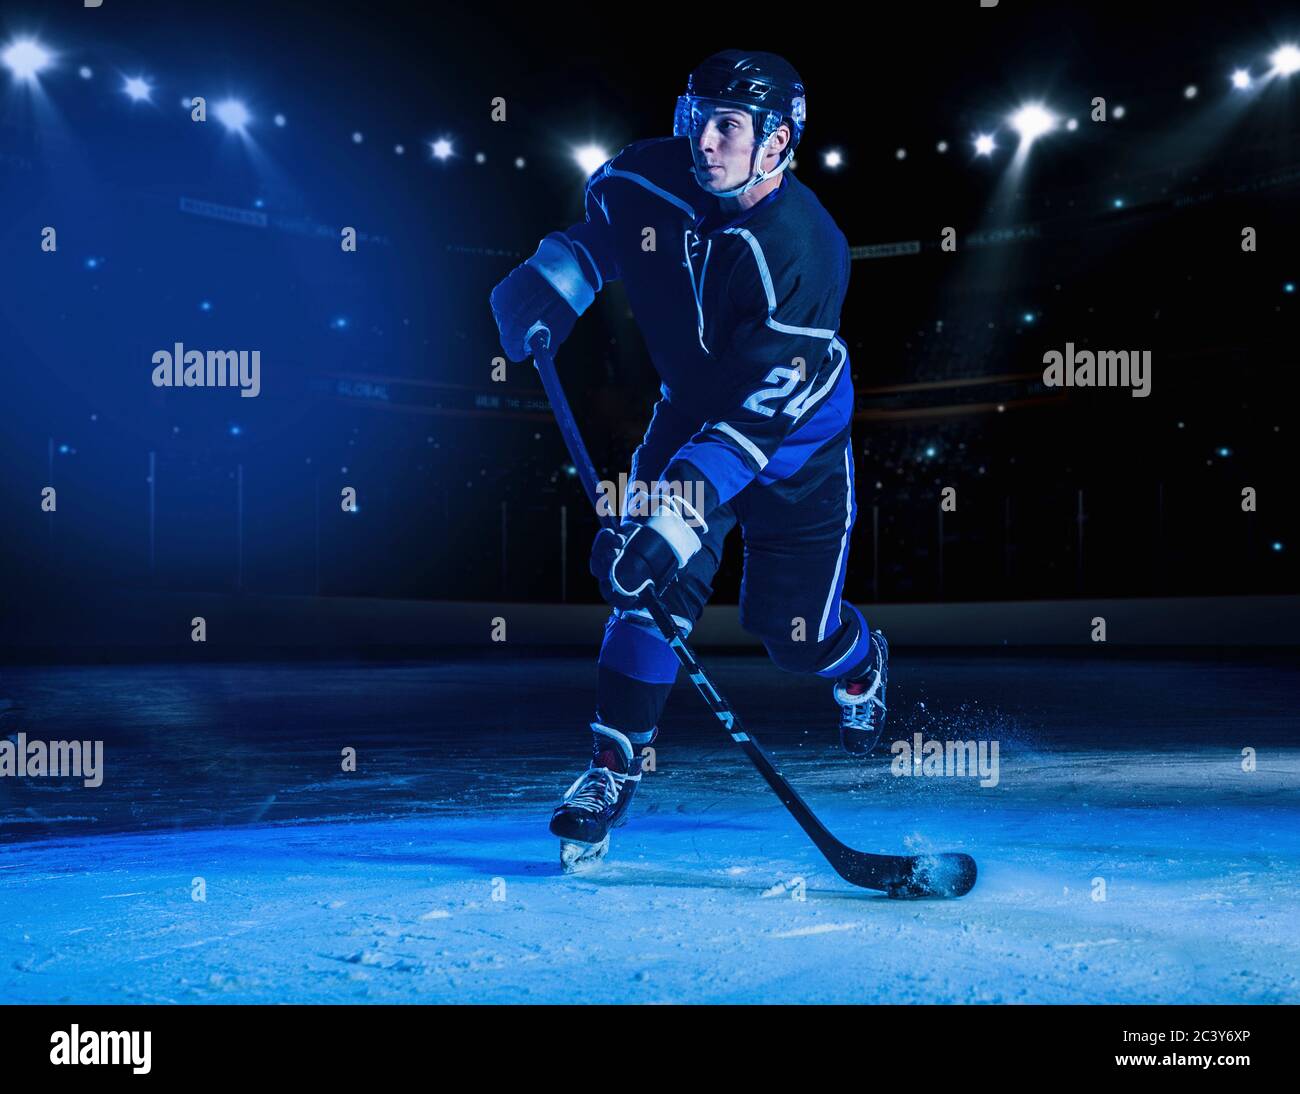 Joueur de hockey sur glace Banque D'Images